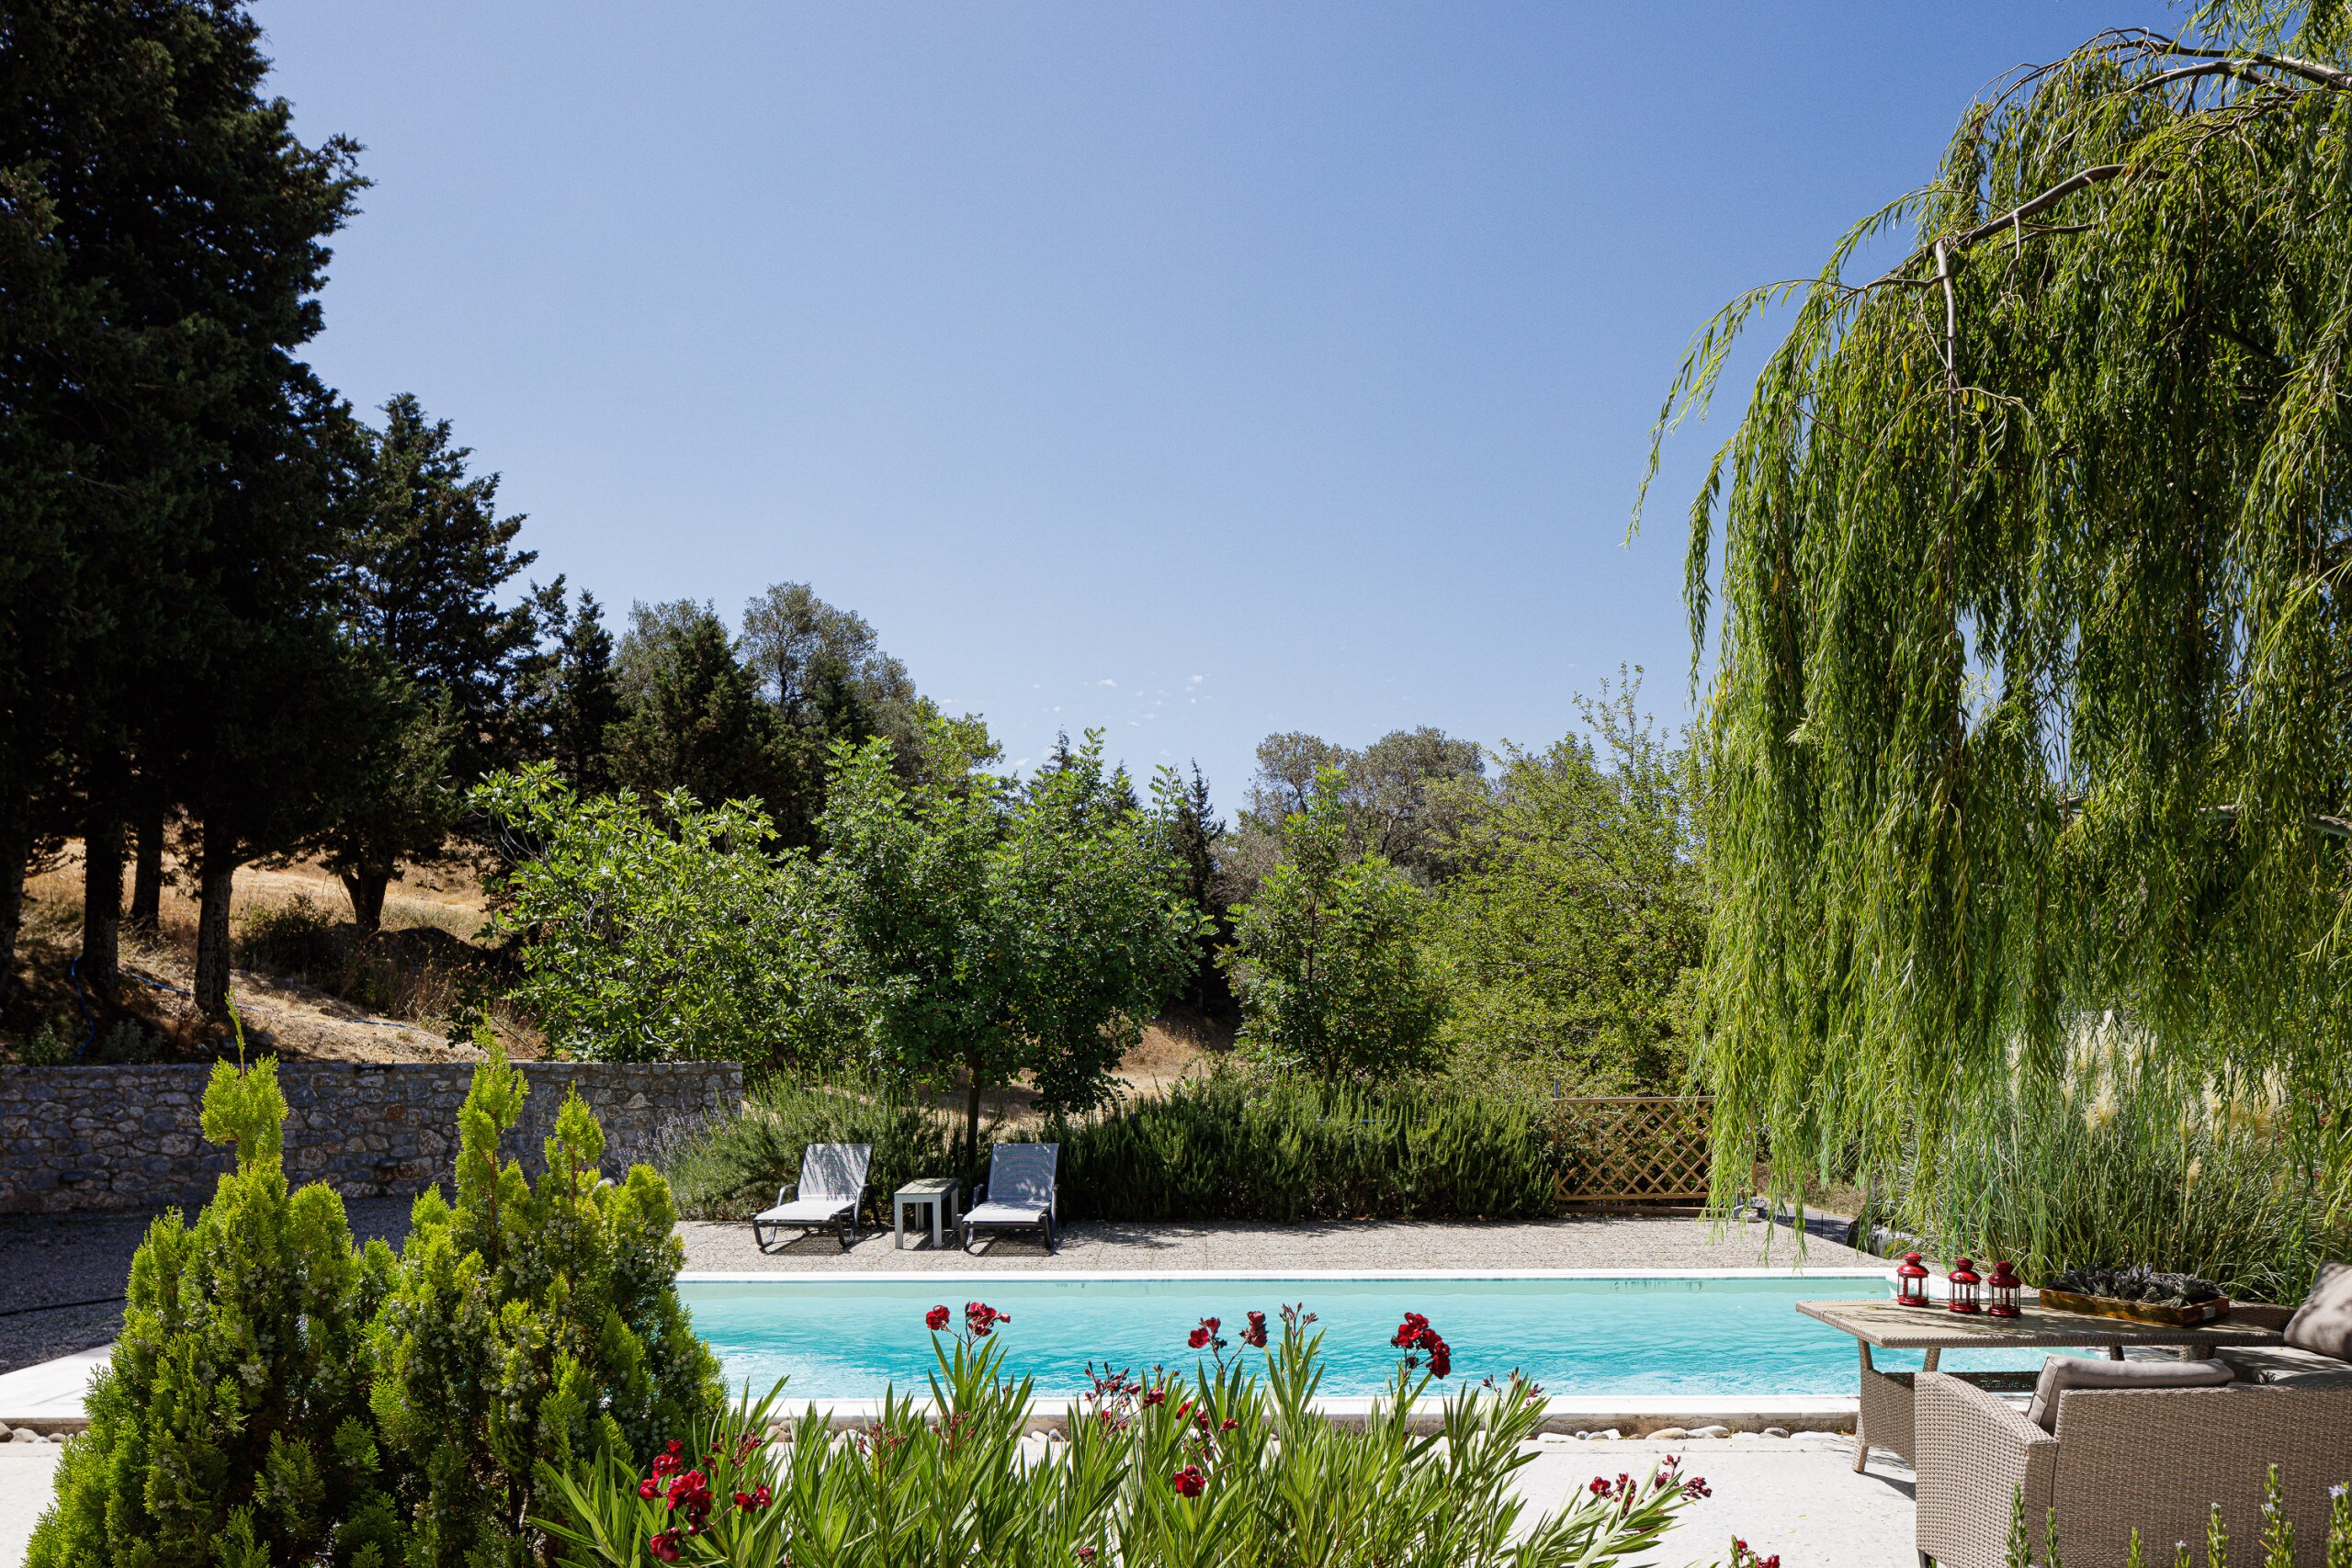 Villa with a sensory driven design private pool.